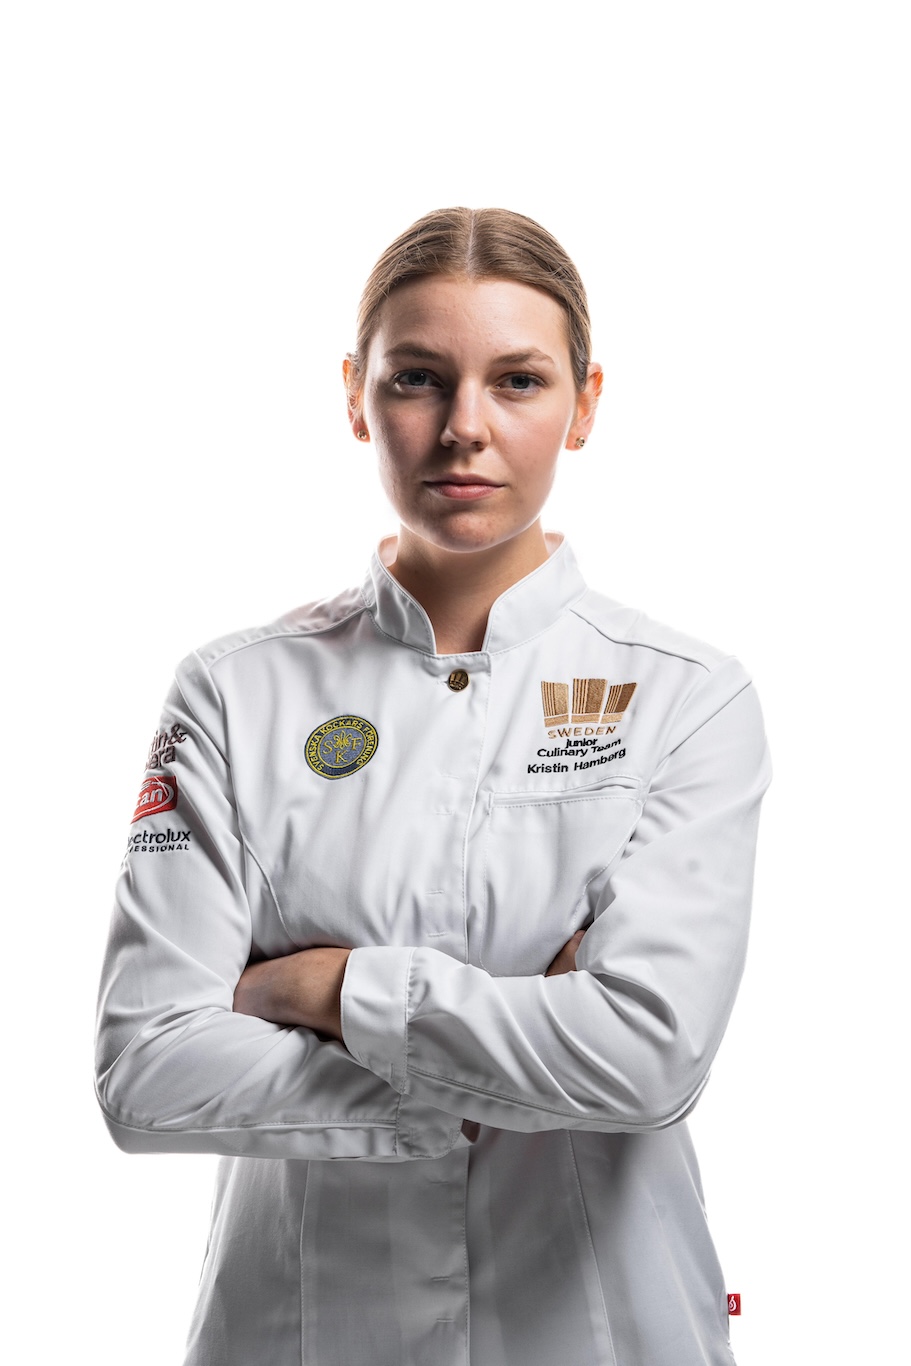 Kristin Hambergs reise fra amatørbaker til kulinarisk OL-gullvinner 10